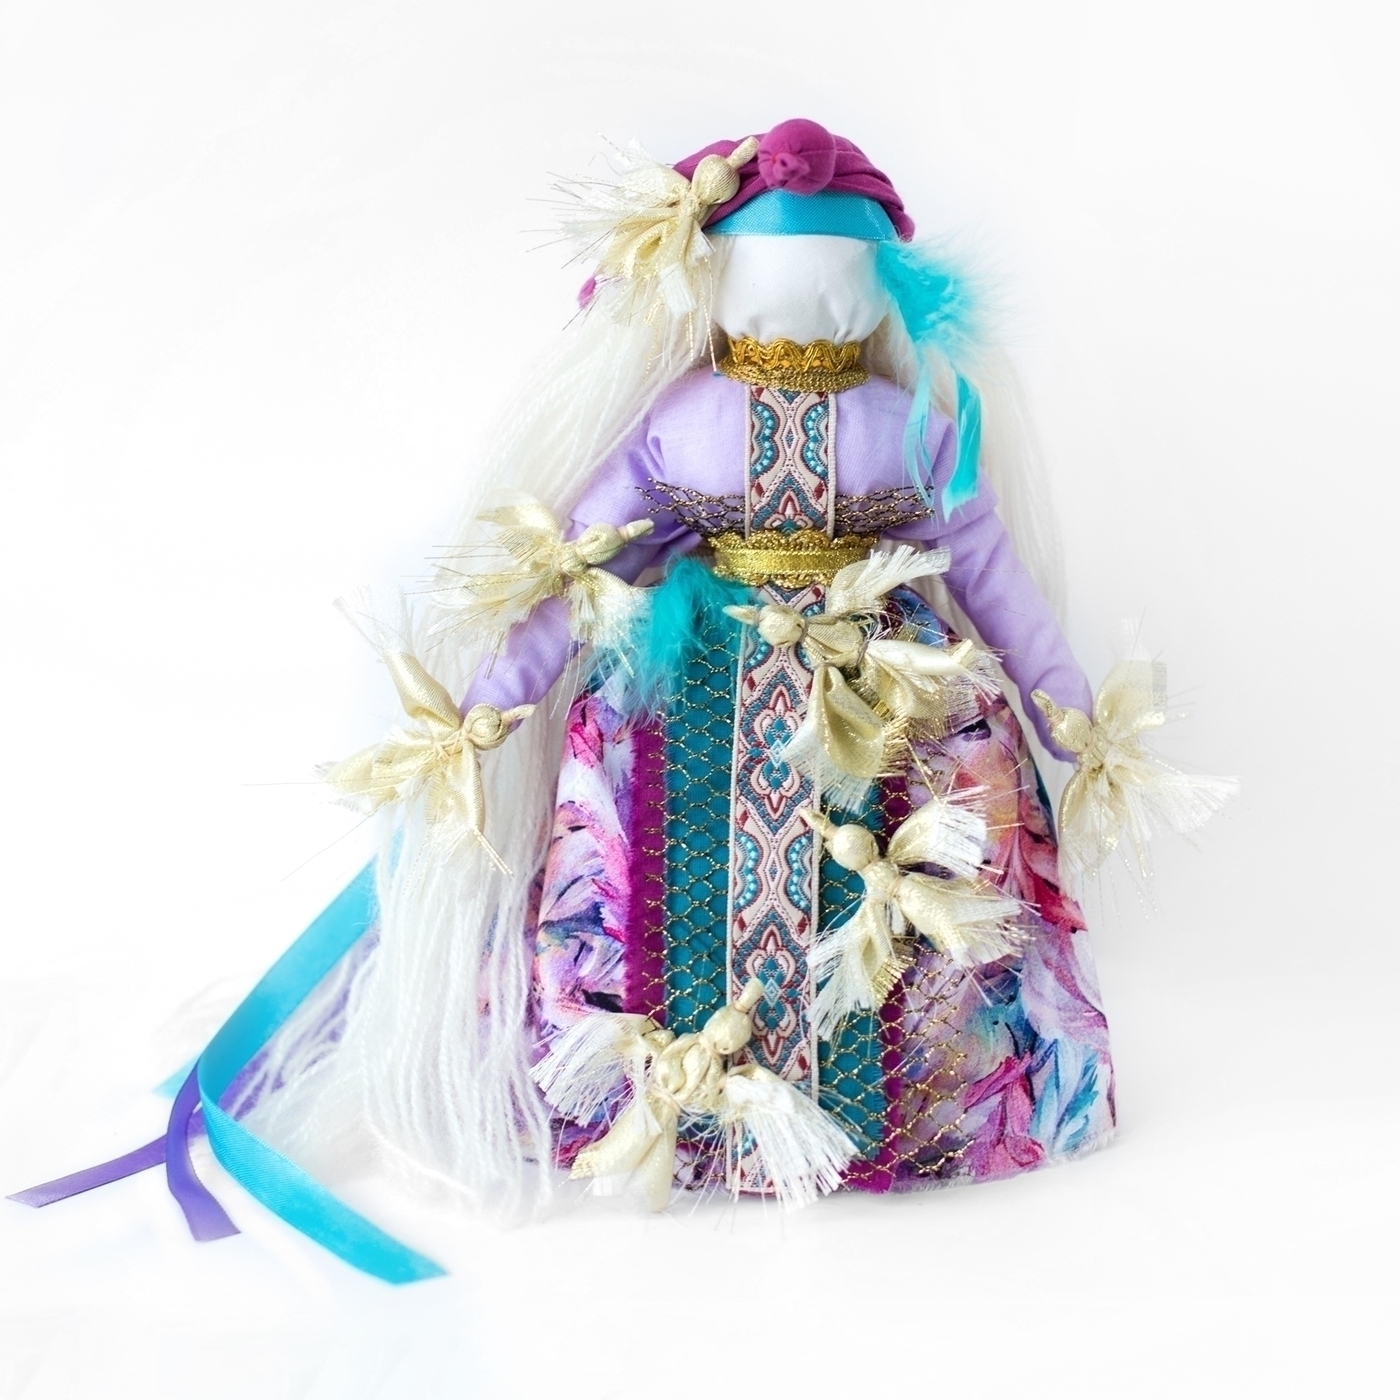 Кукла Берегиня –– защитный талисман для сохранение тепла домашнего очага и здоровья